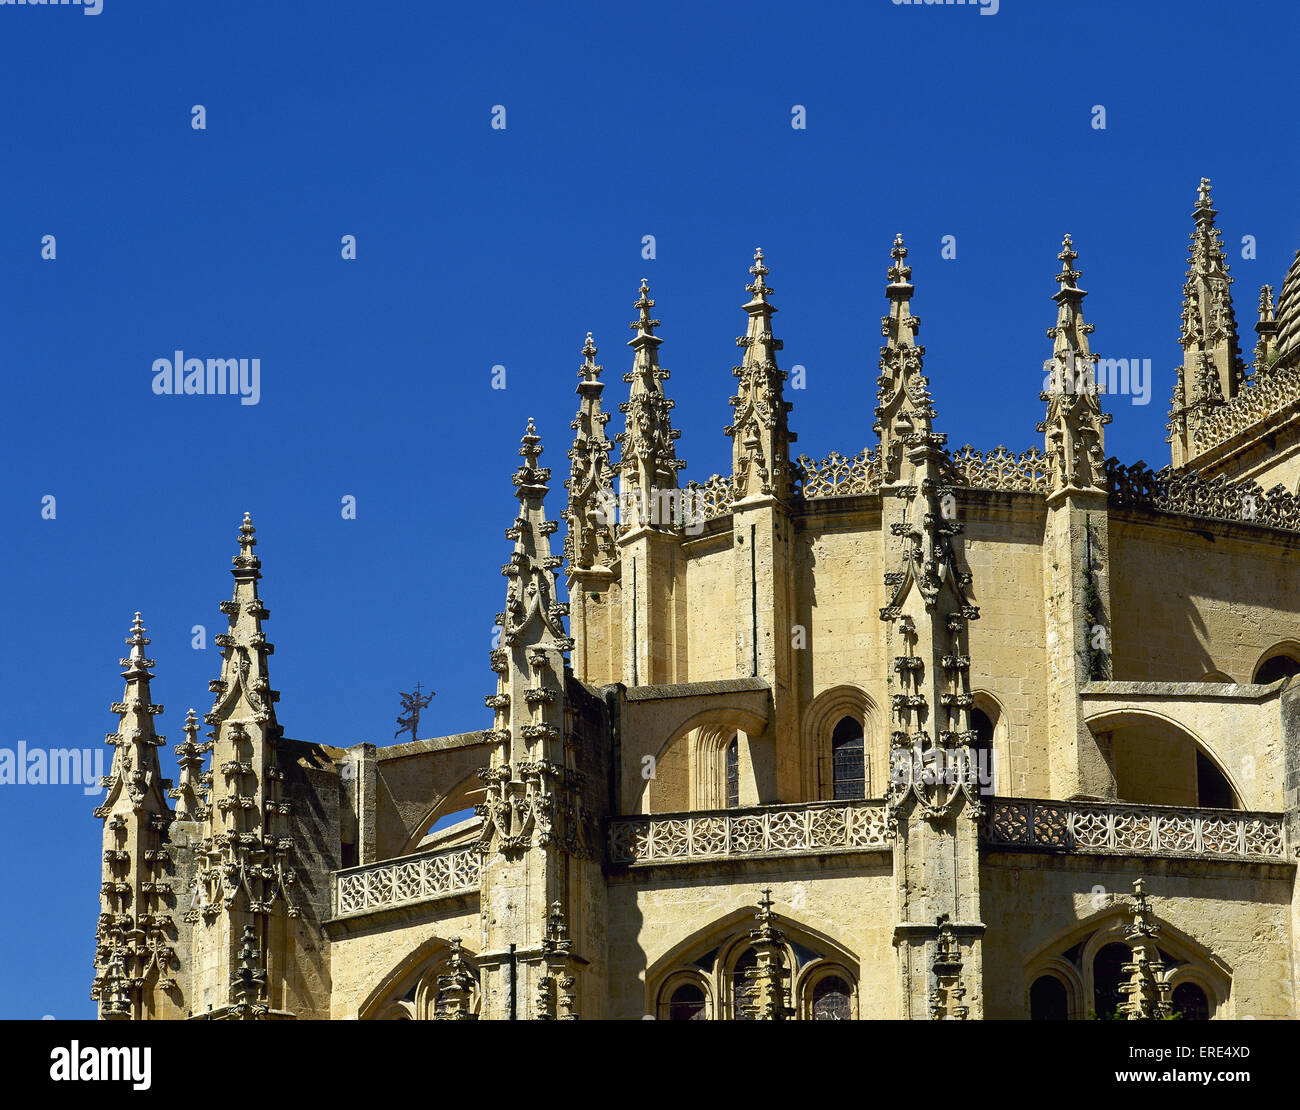 Pinnacoli del gotico immagini e fotografie stock ad alta risoluzione - Alamy